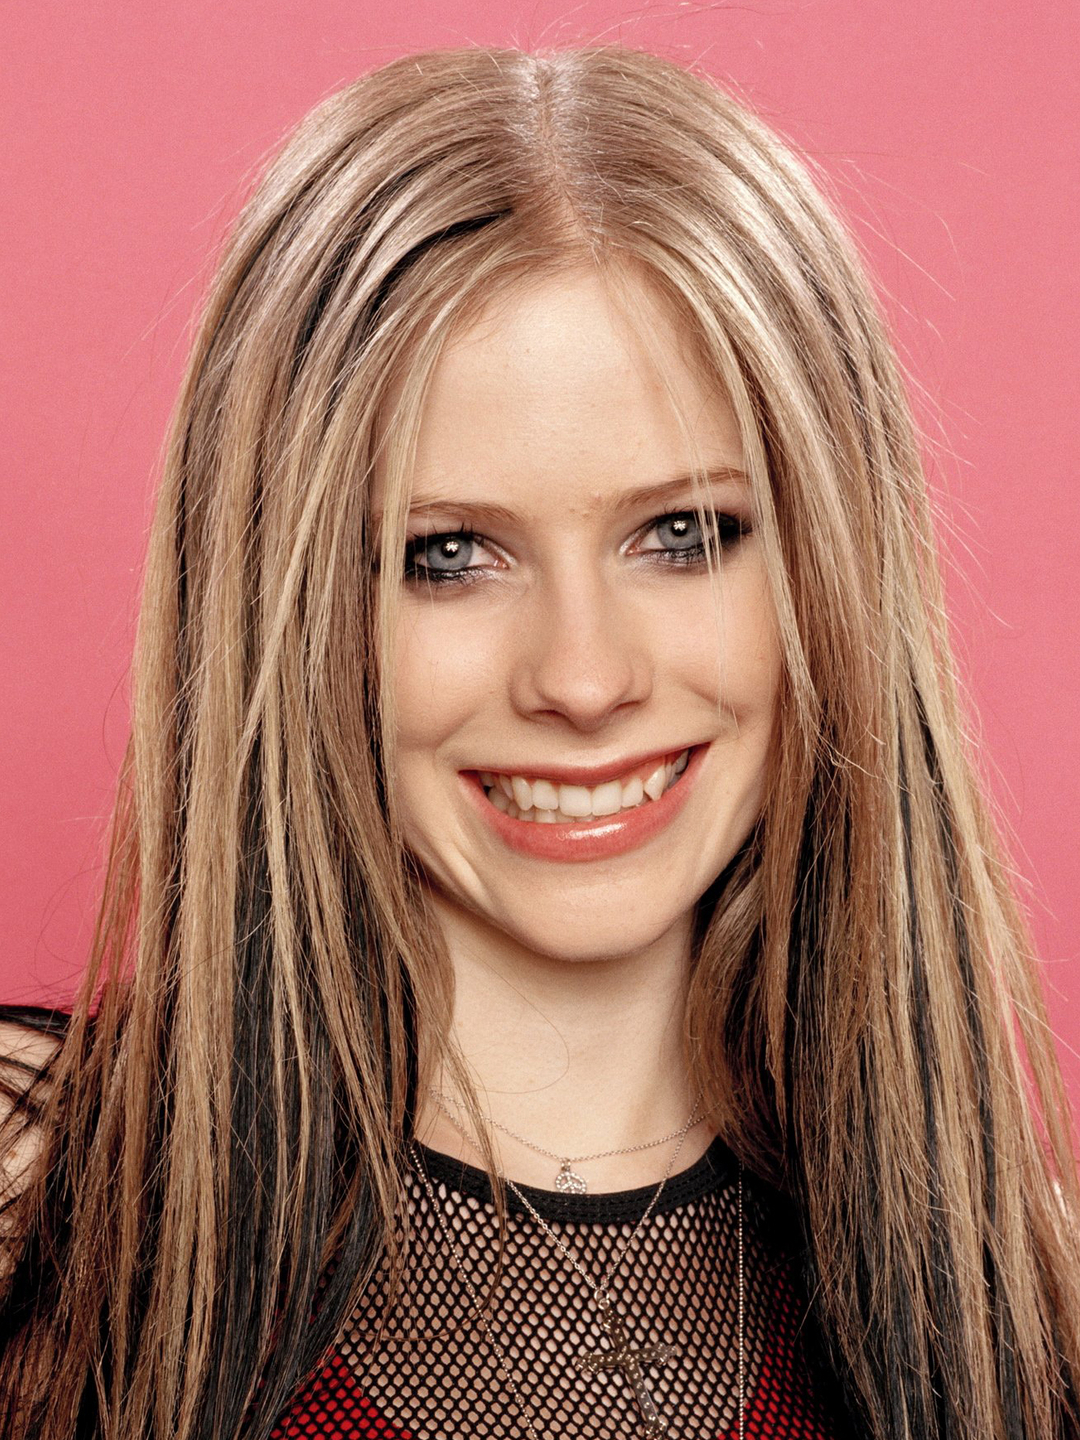 Avril Lavigne in her teens